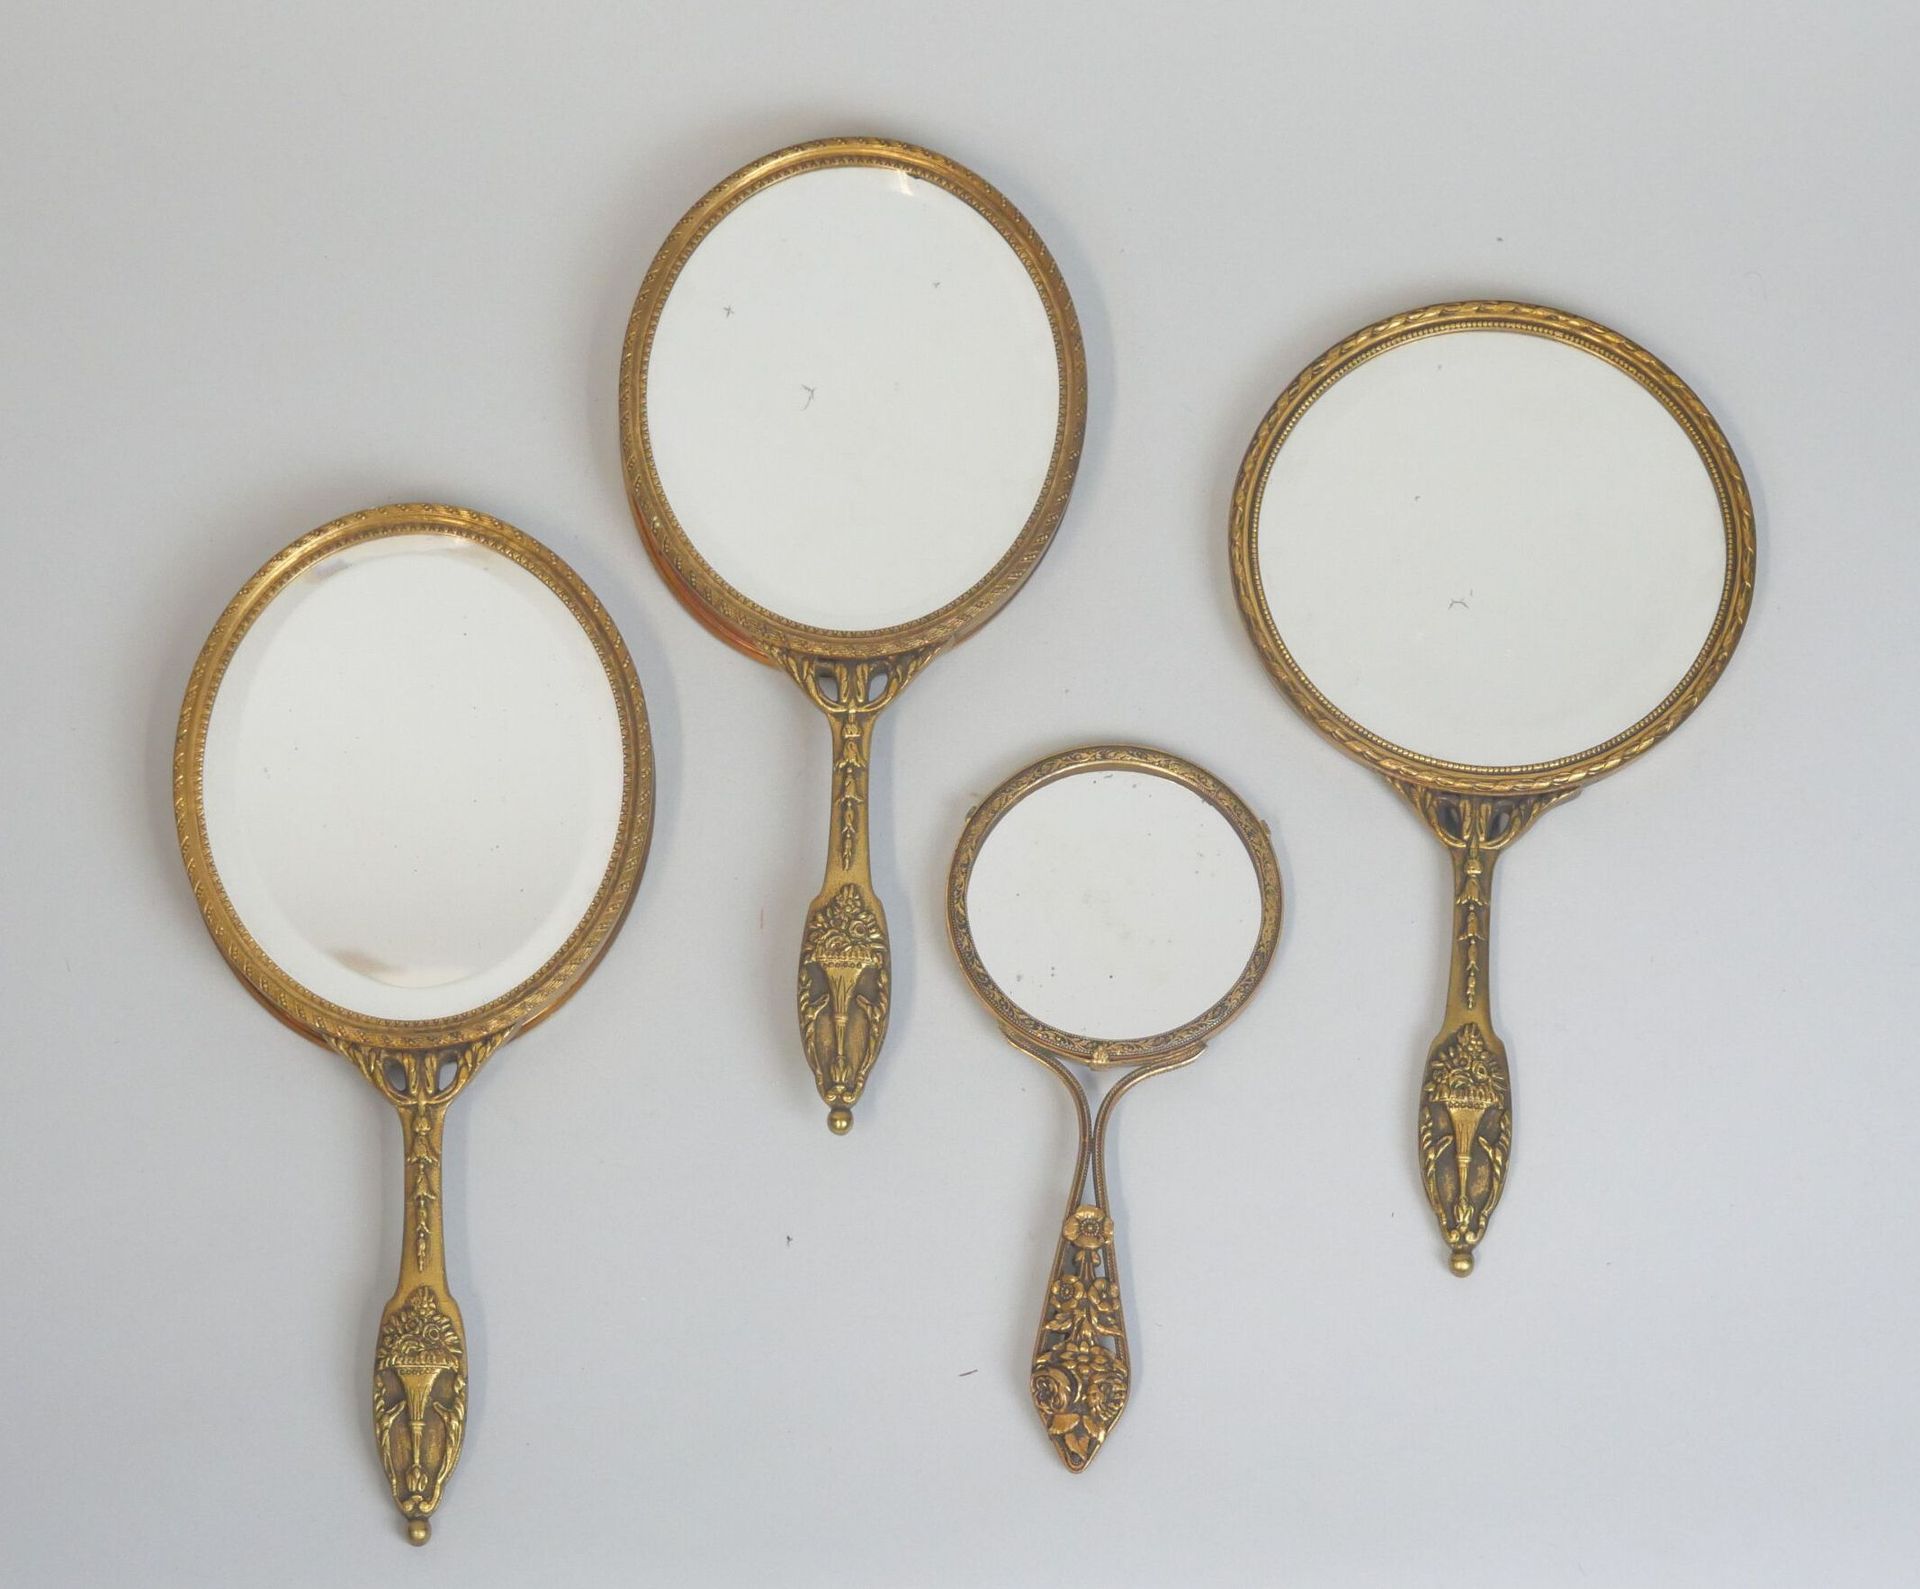 Null Juego de 4 espejos de mano con monturas de bronce plateado:
- 2 espejos ova&hellip;